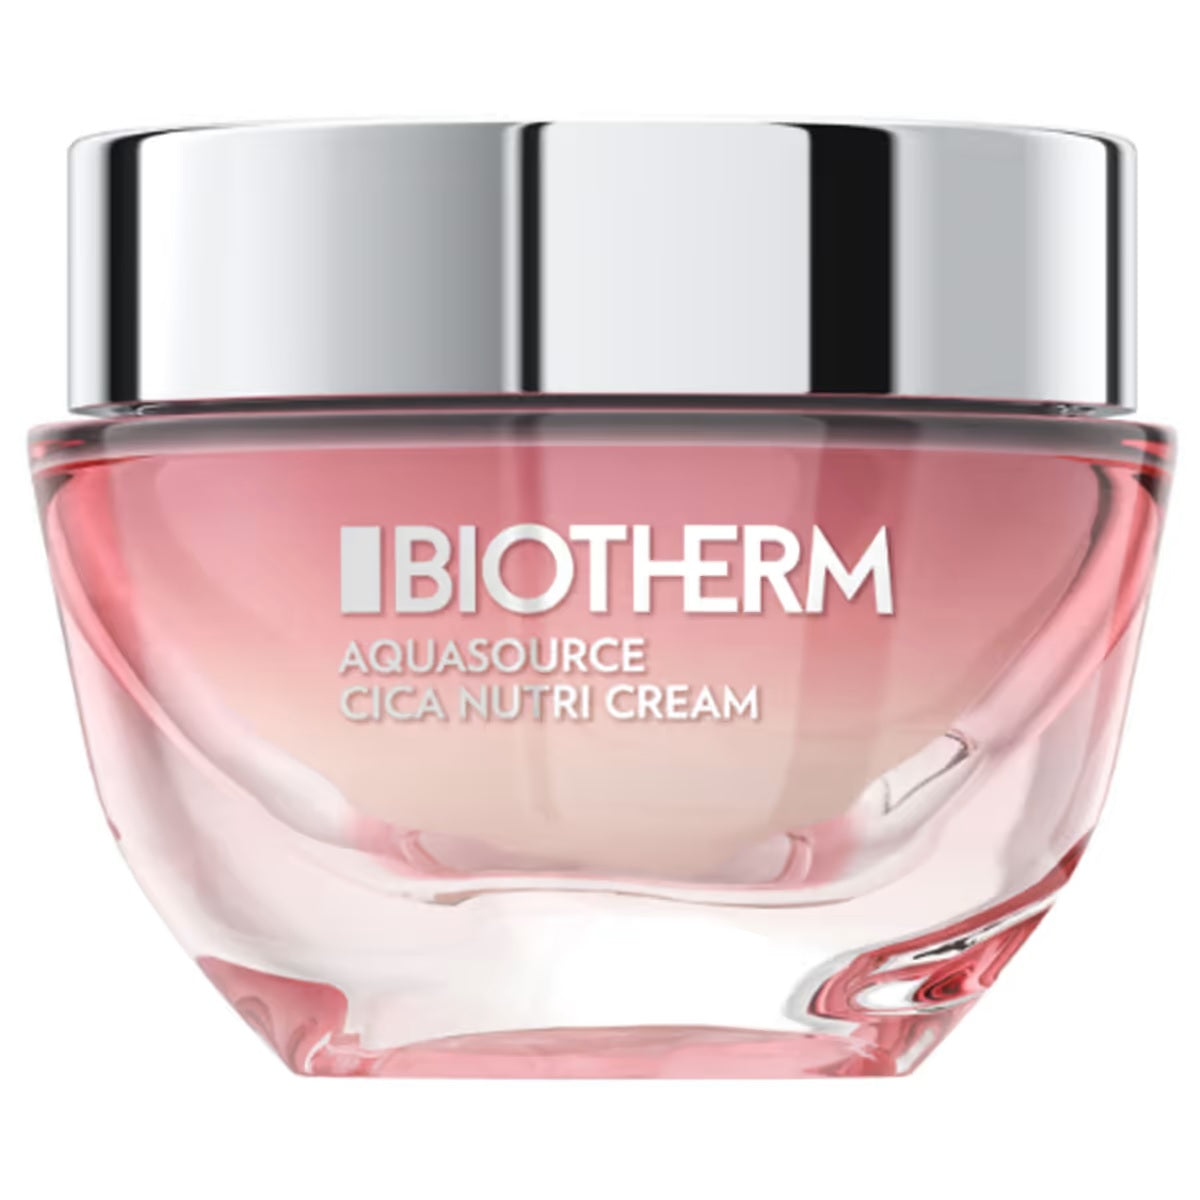 Biotherm Aquasource Cica Nutri Cream интенсивно увлажняющий крем для сухой кожи 50мл